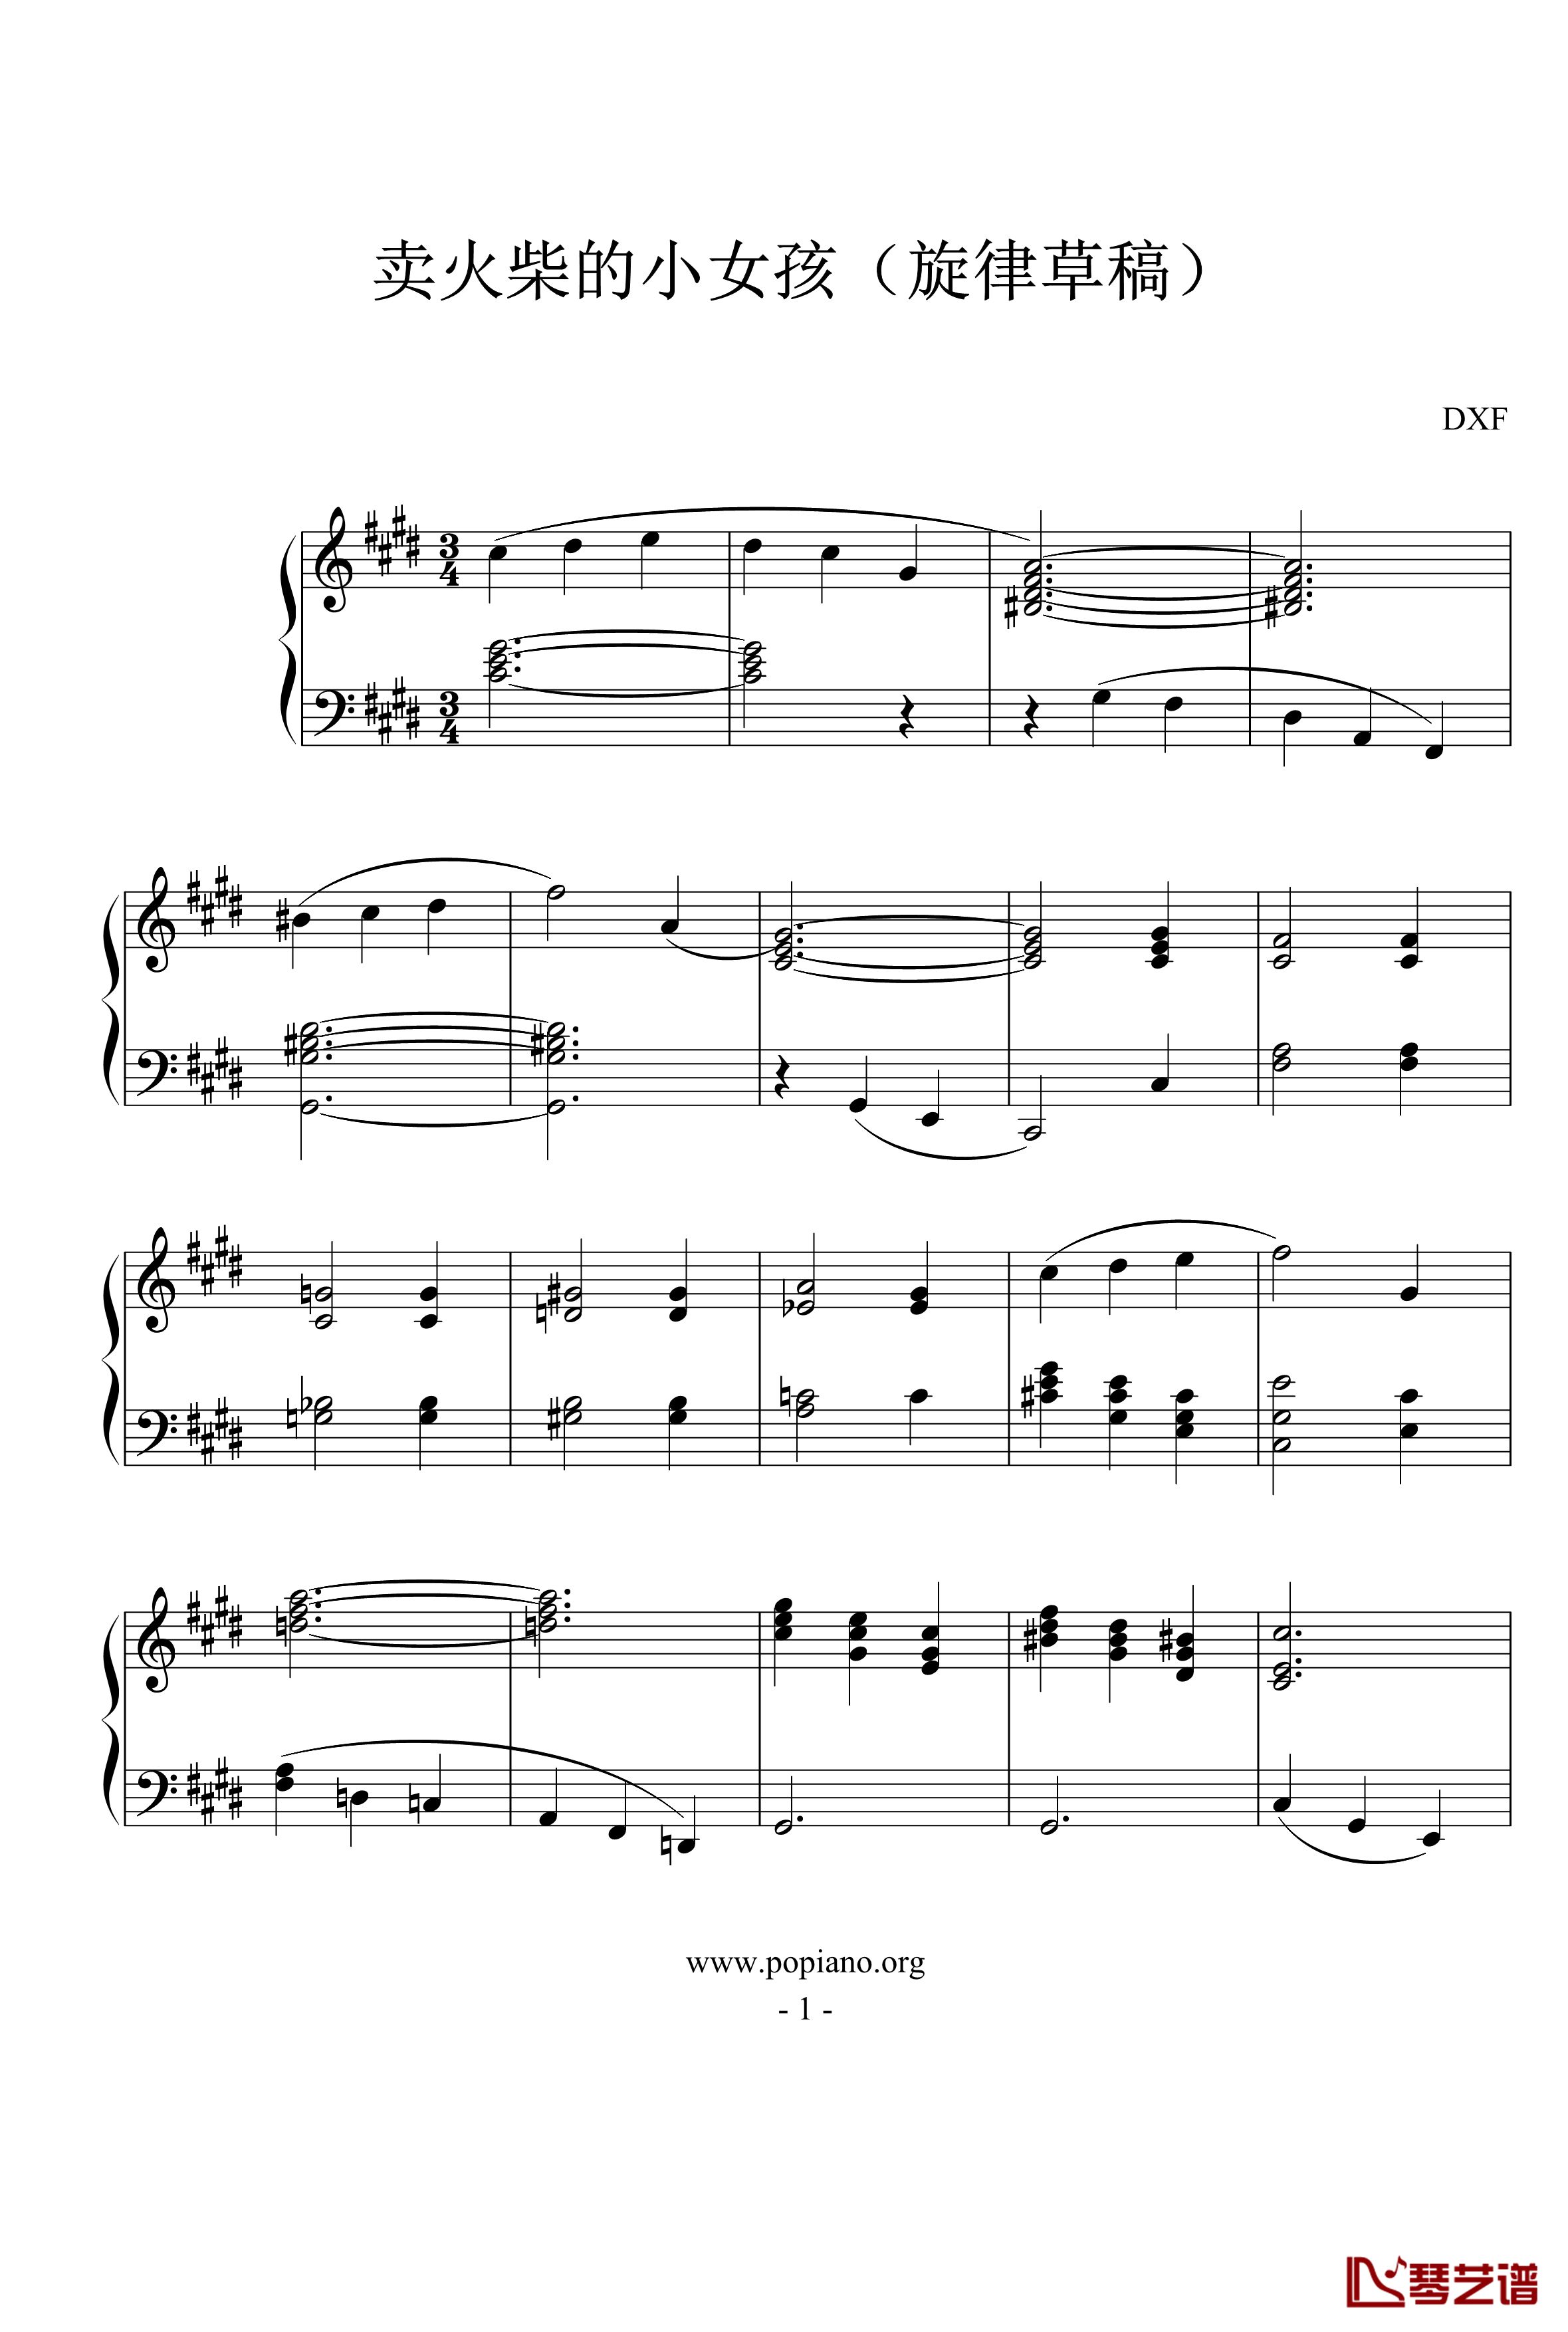 卖火柴的小女孩钢琴谱-旋律草稿-DXF1